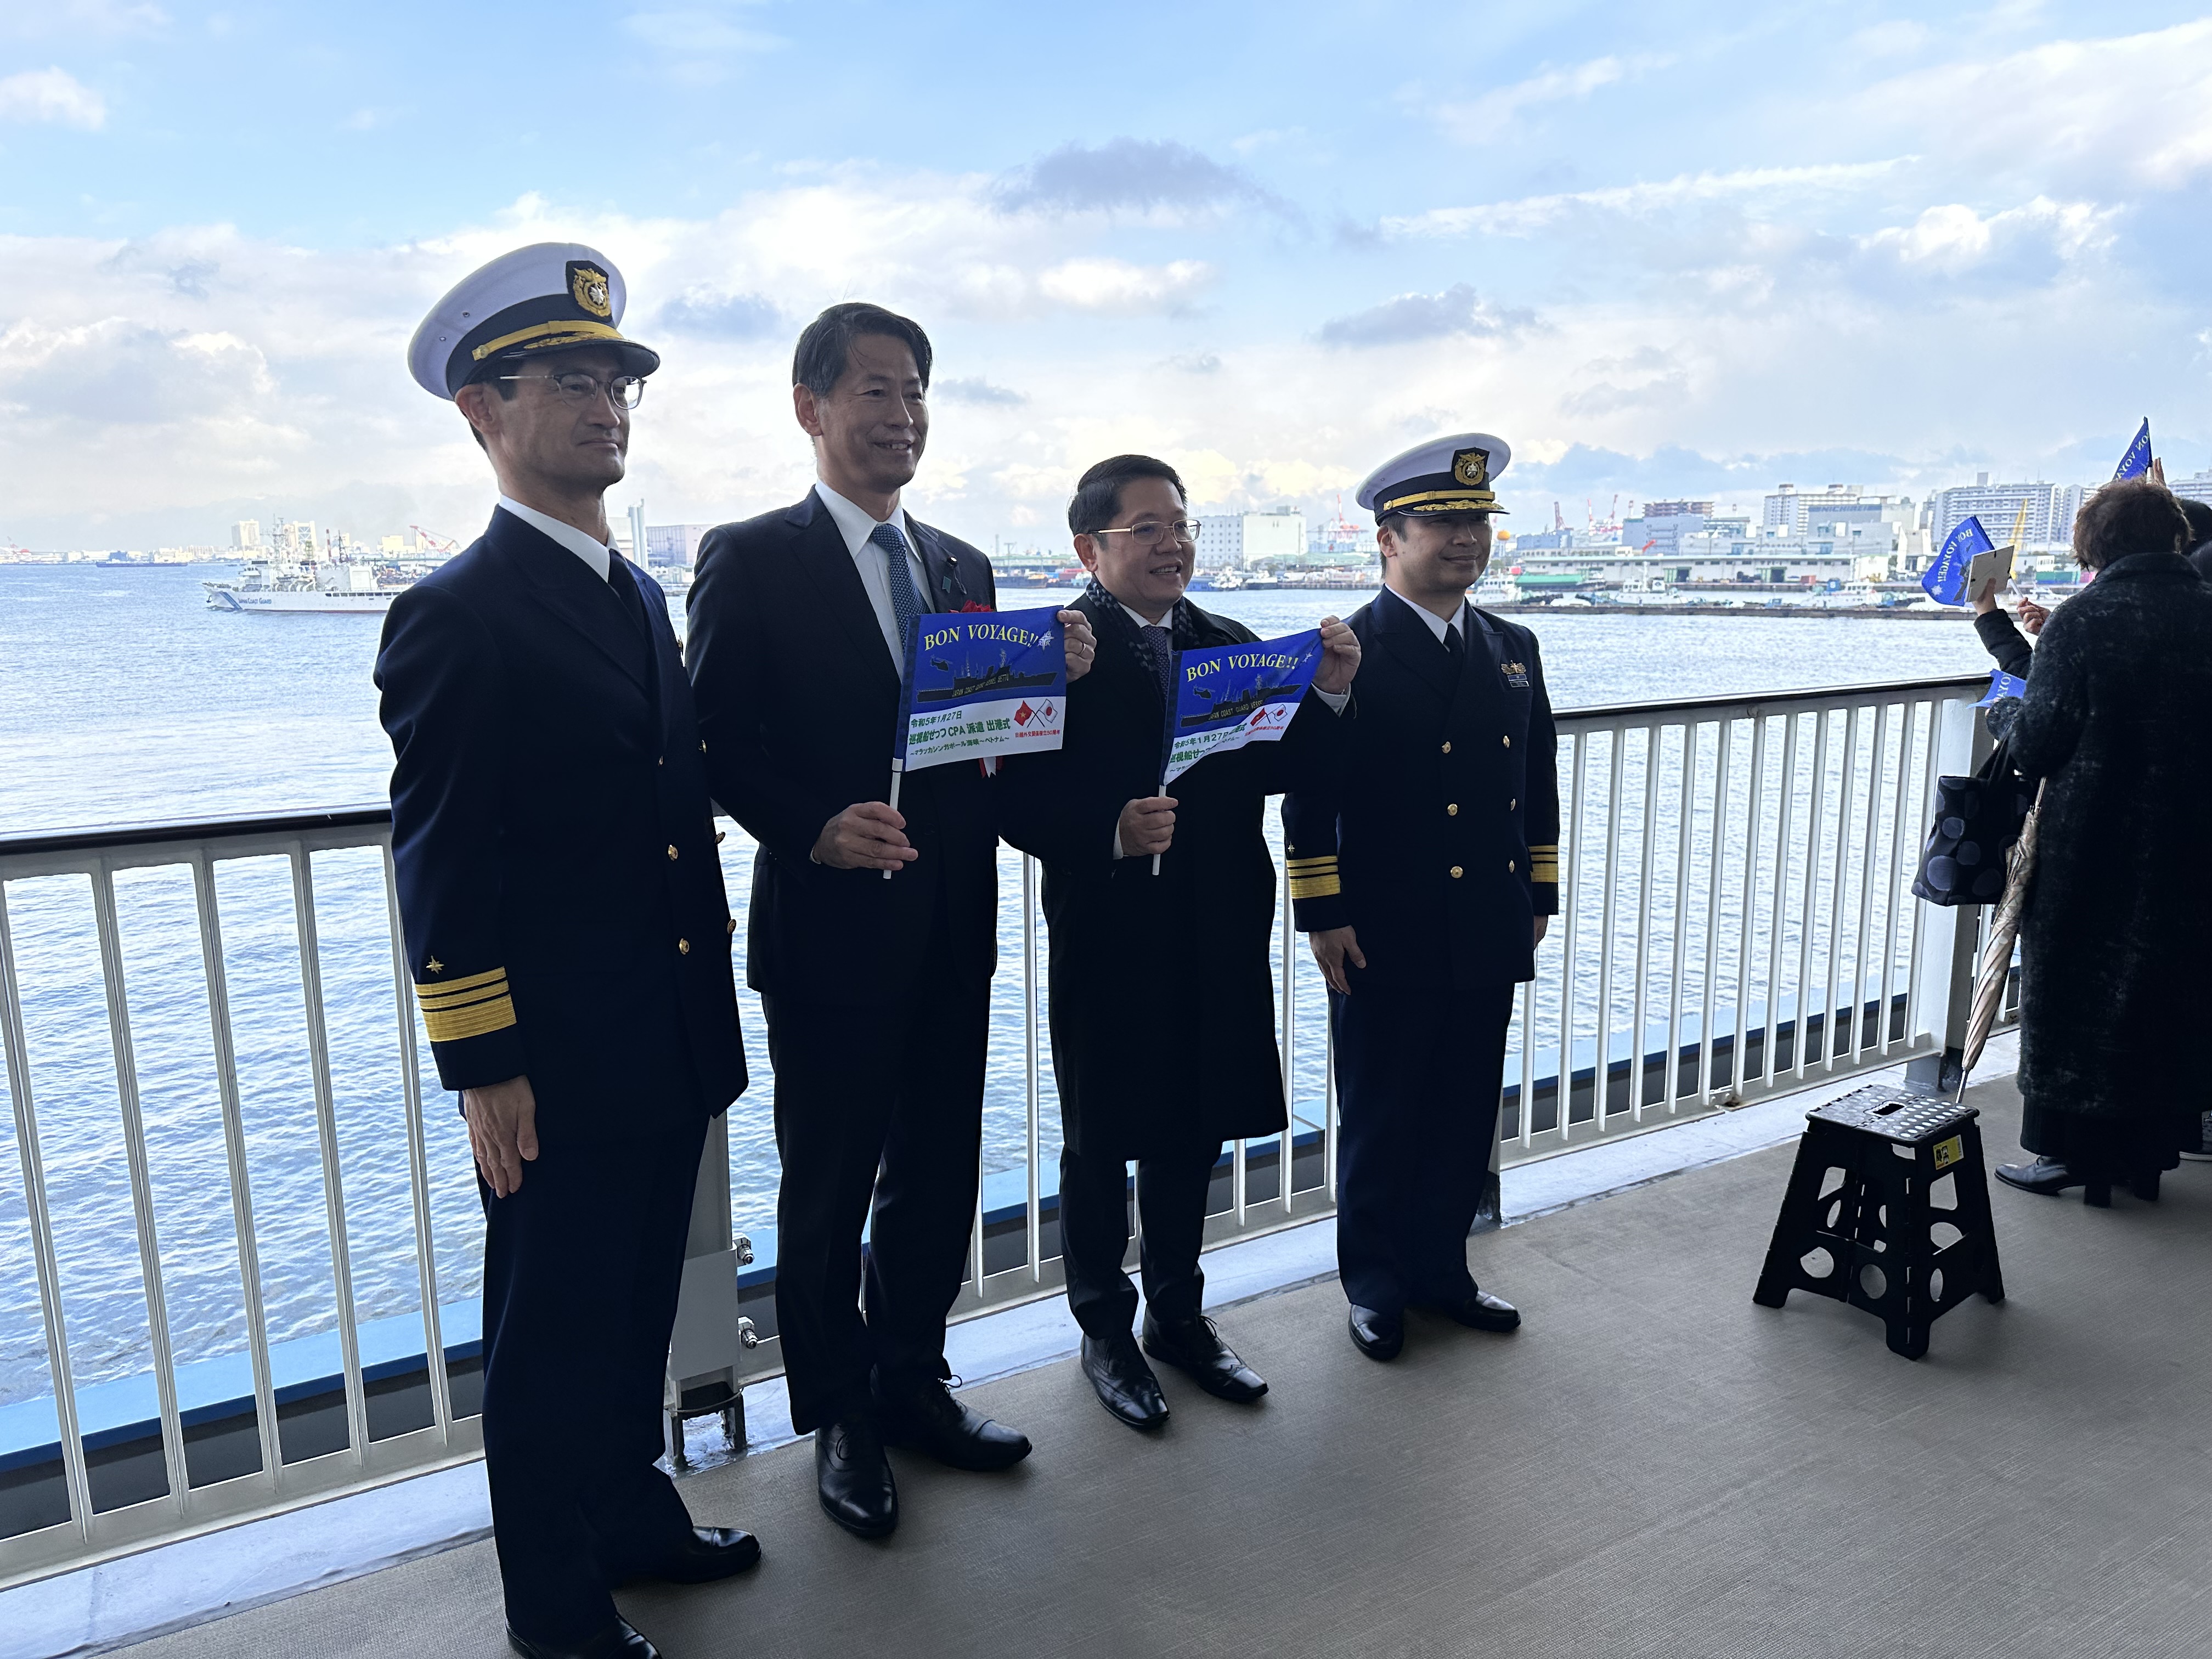 Quốc vụ khanh Bộ Ngoại giao Nhật Bản Yamada Kenji (thứ hai từ trái sang), Tổng lãnh sự Ngô Trịnh Hà (thứ ba từ trái sang), Chuẩn đô đốc Lực lượng bảo vệ bờ biển Nhật Bản Nobukazu Nagai (thứ tư từ trái sang).